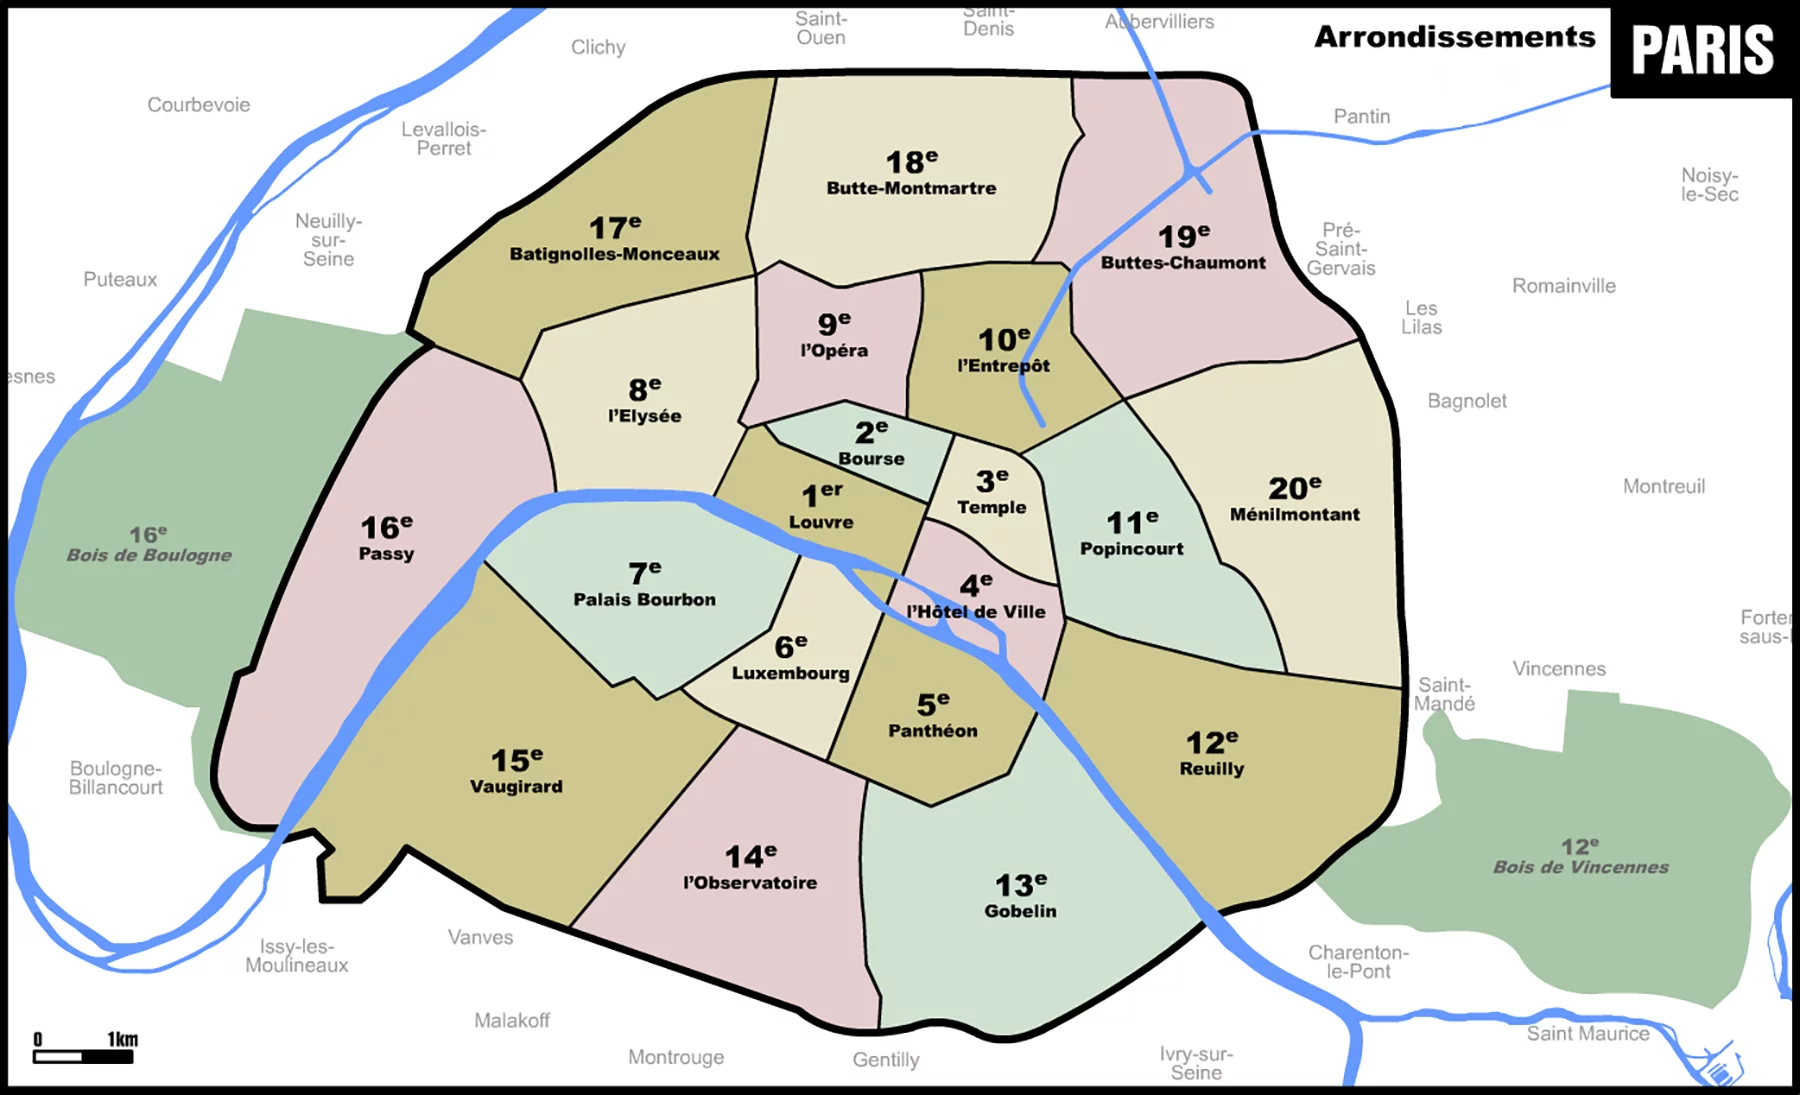 Map of the Paris arrondissements